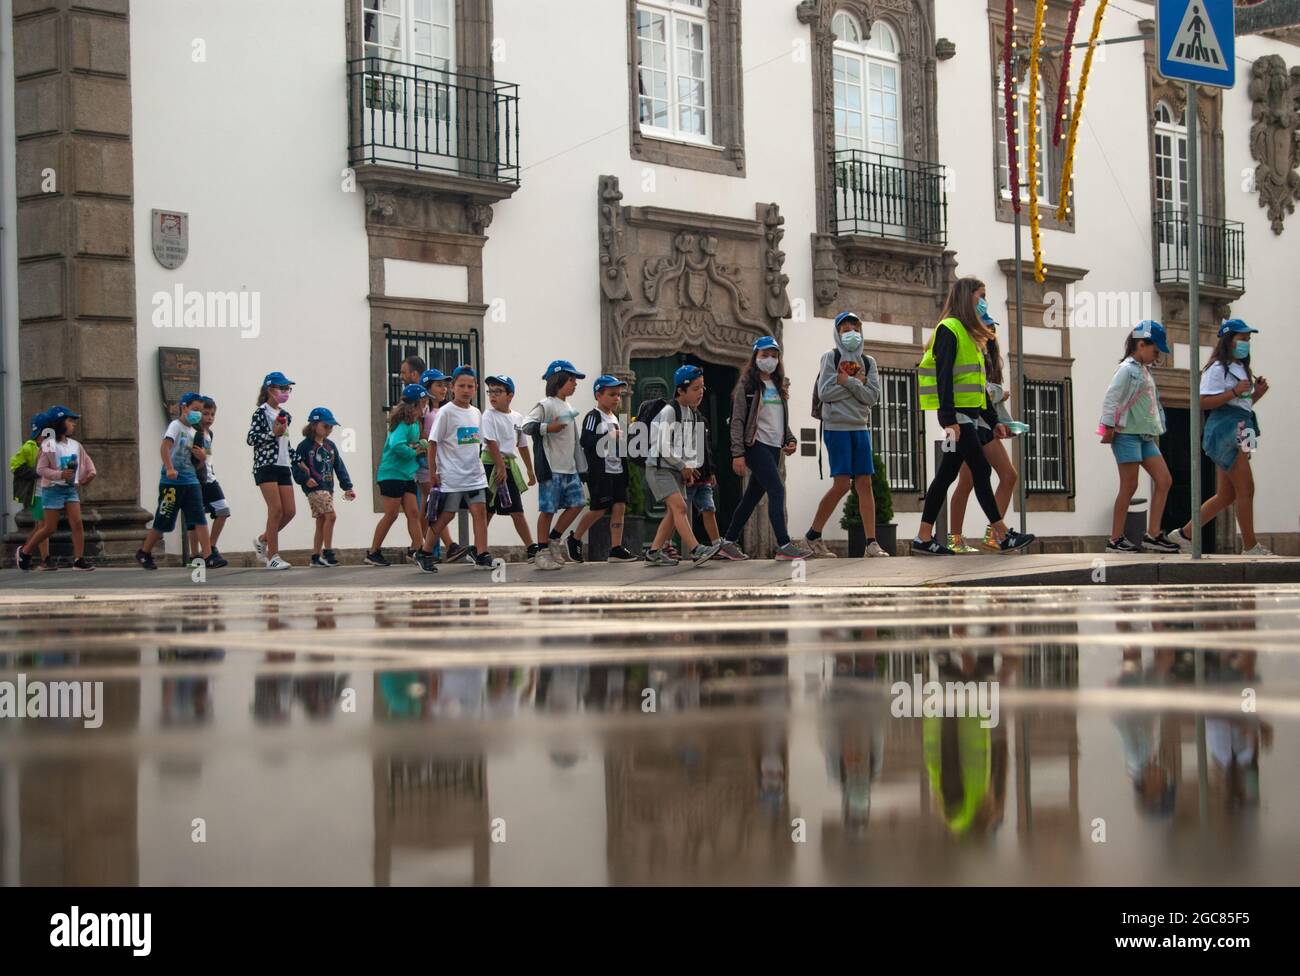 VIANA DO CASTELO, PORTUGAL - 30. JULI 2021: Organisierte Gruppe von Kindern, die mit Senioren in grünen Westen, die sich im Wasser spiegeln, die Straße entlang gehen. Stockfoto